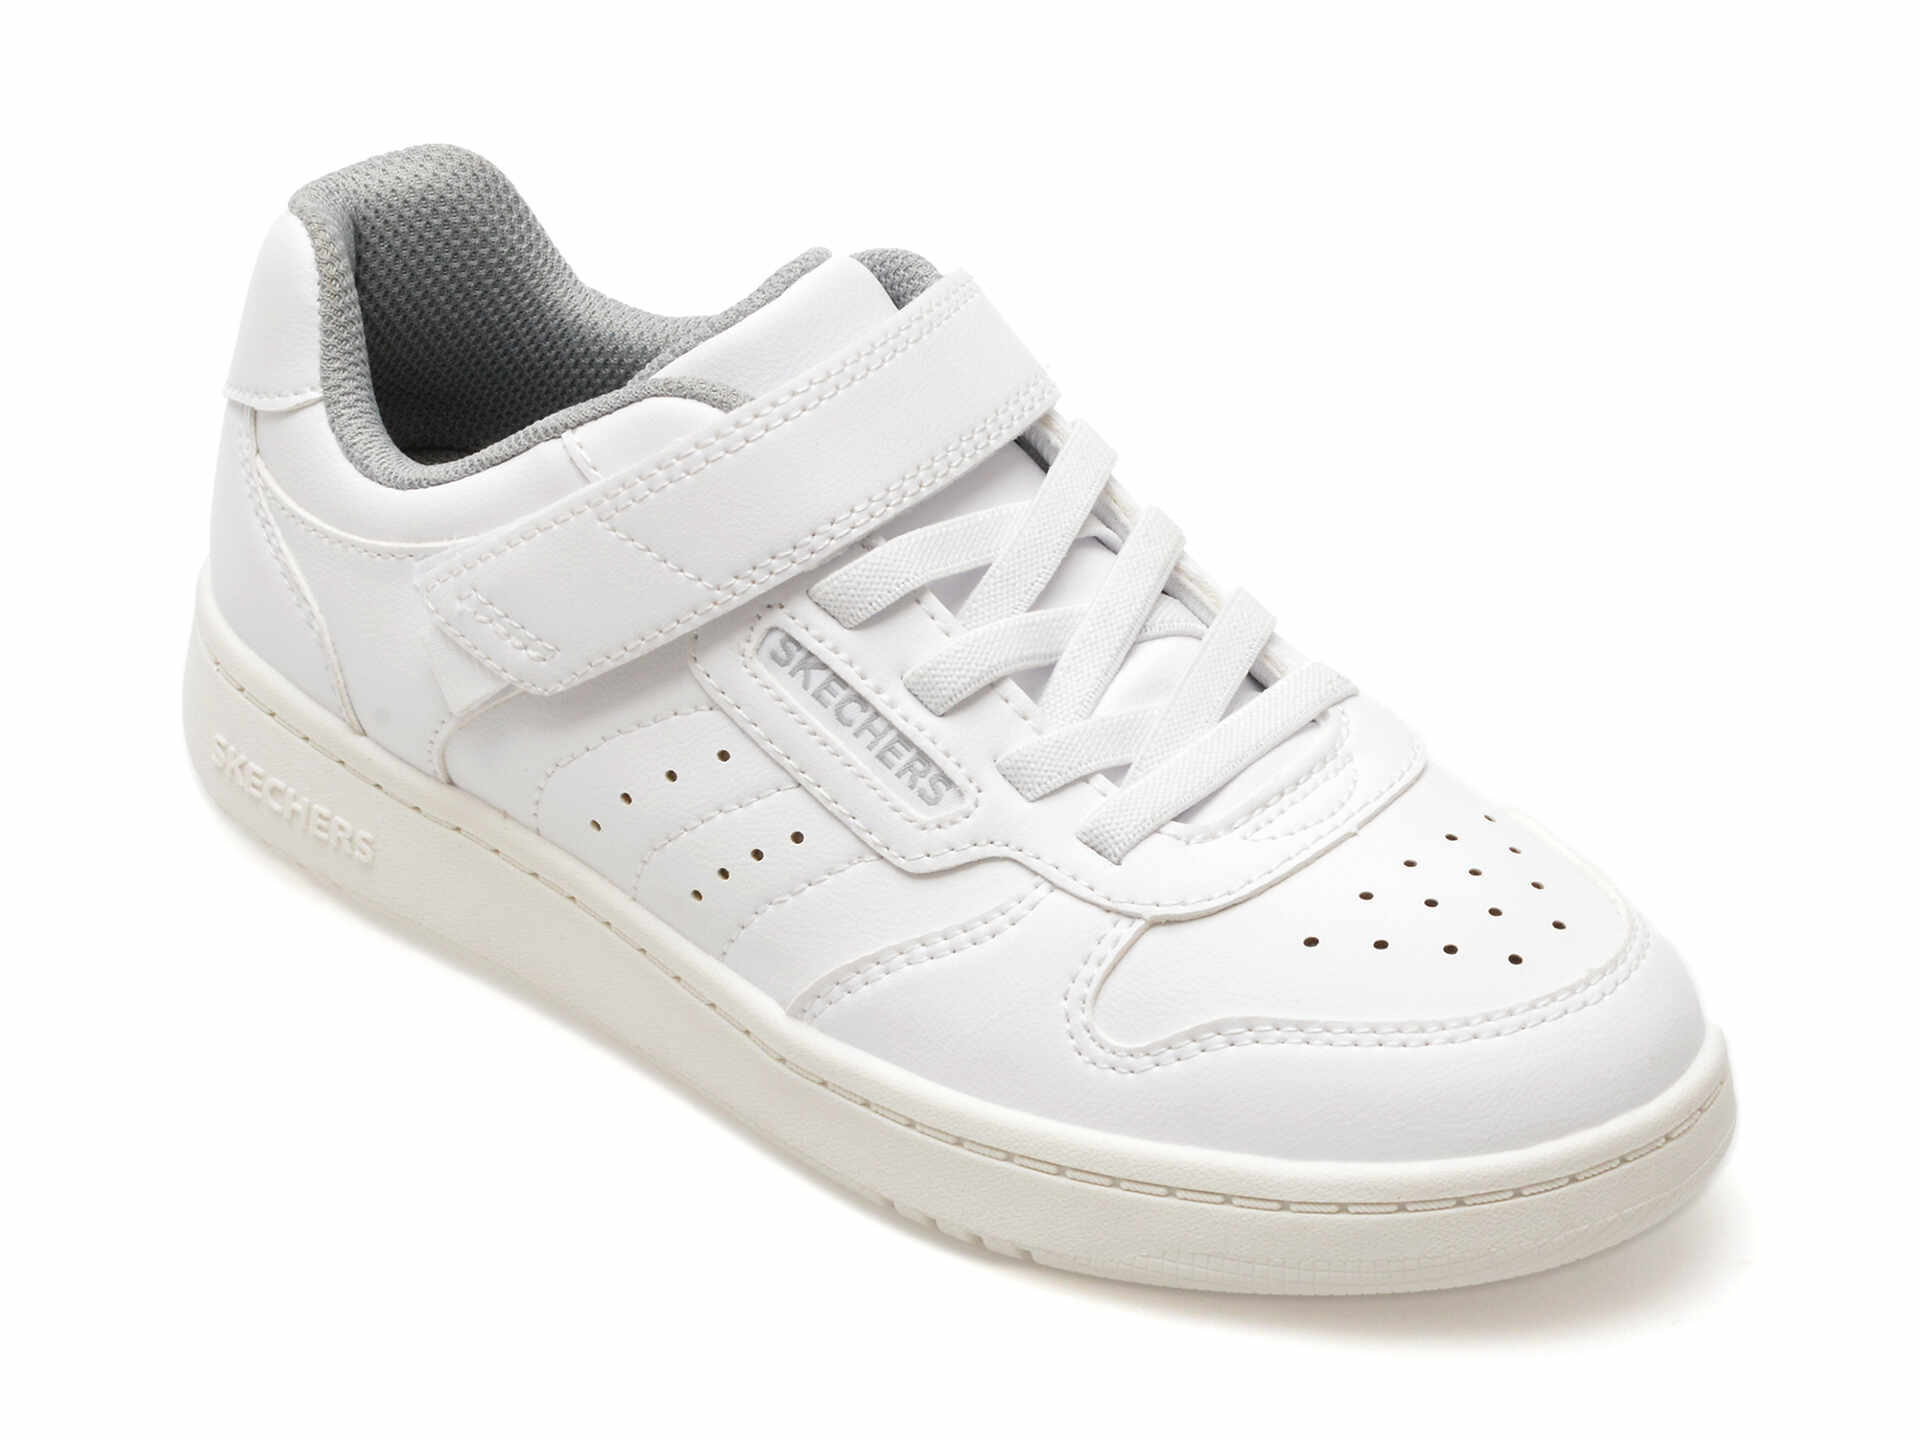 Pantofi sport SKECHERS albi, QUICK STREET, din piele ecologica